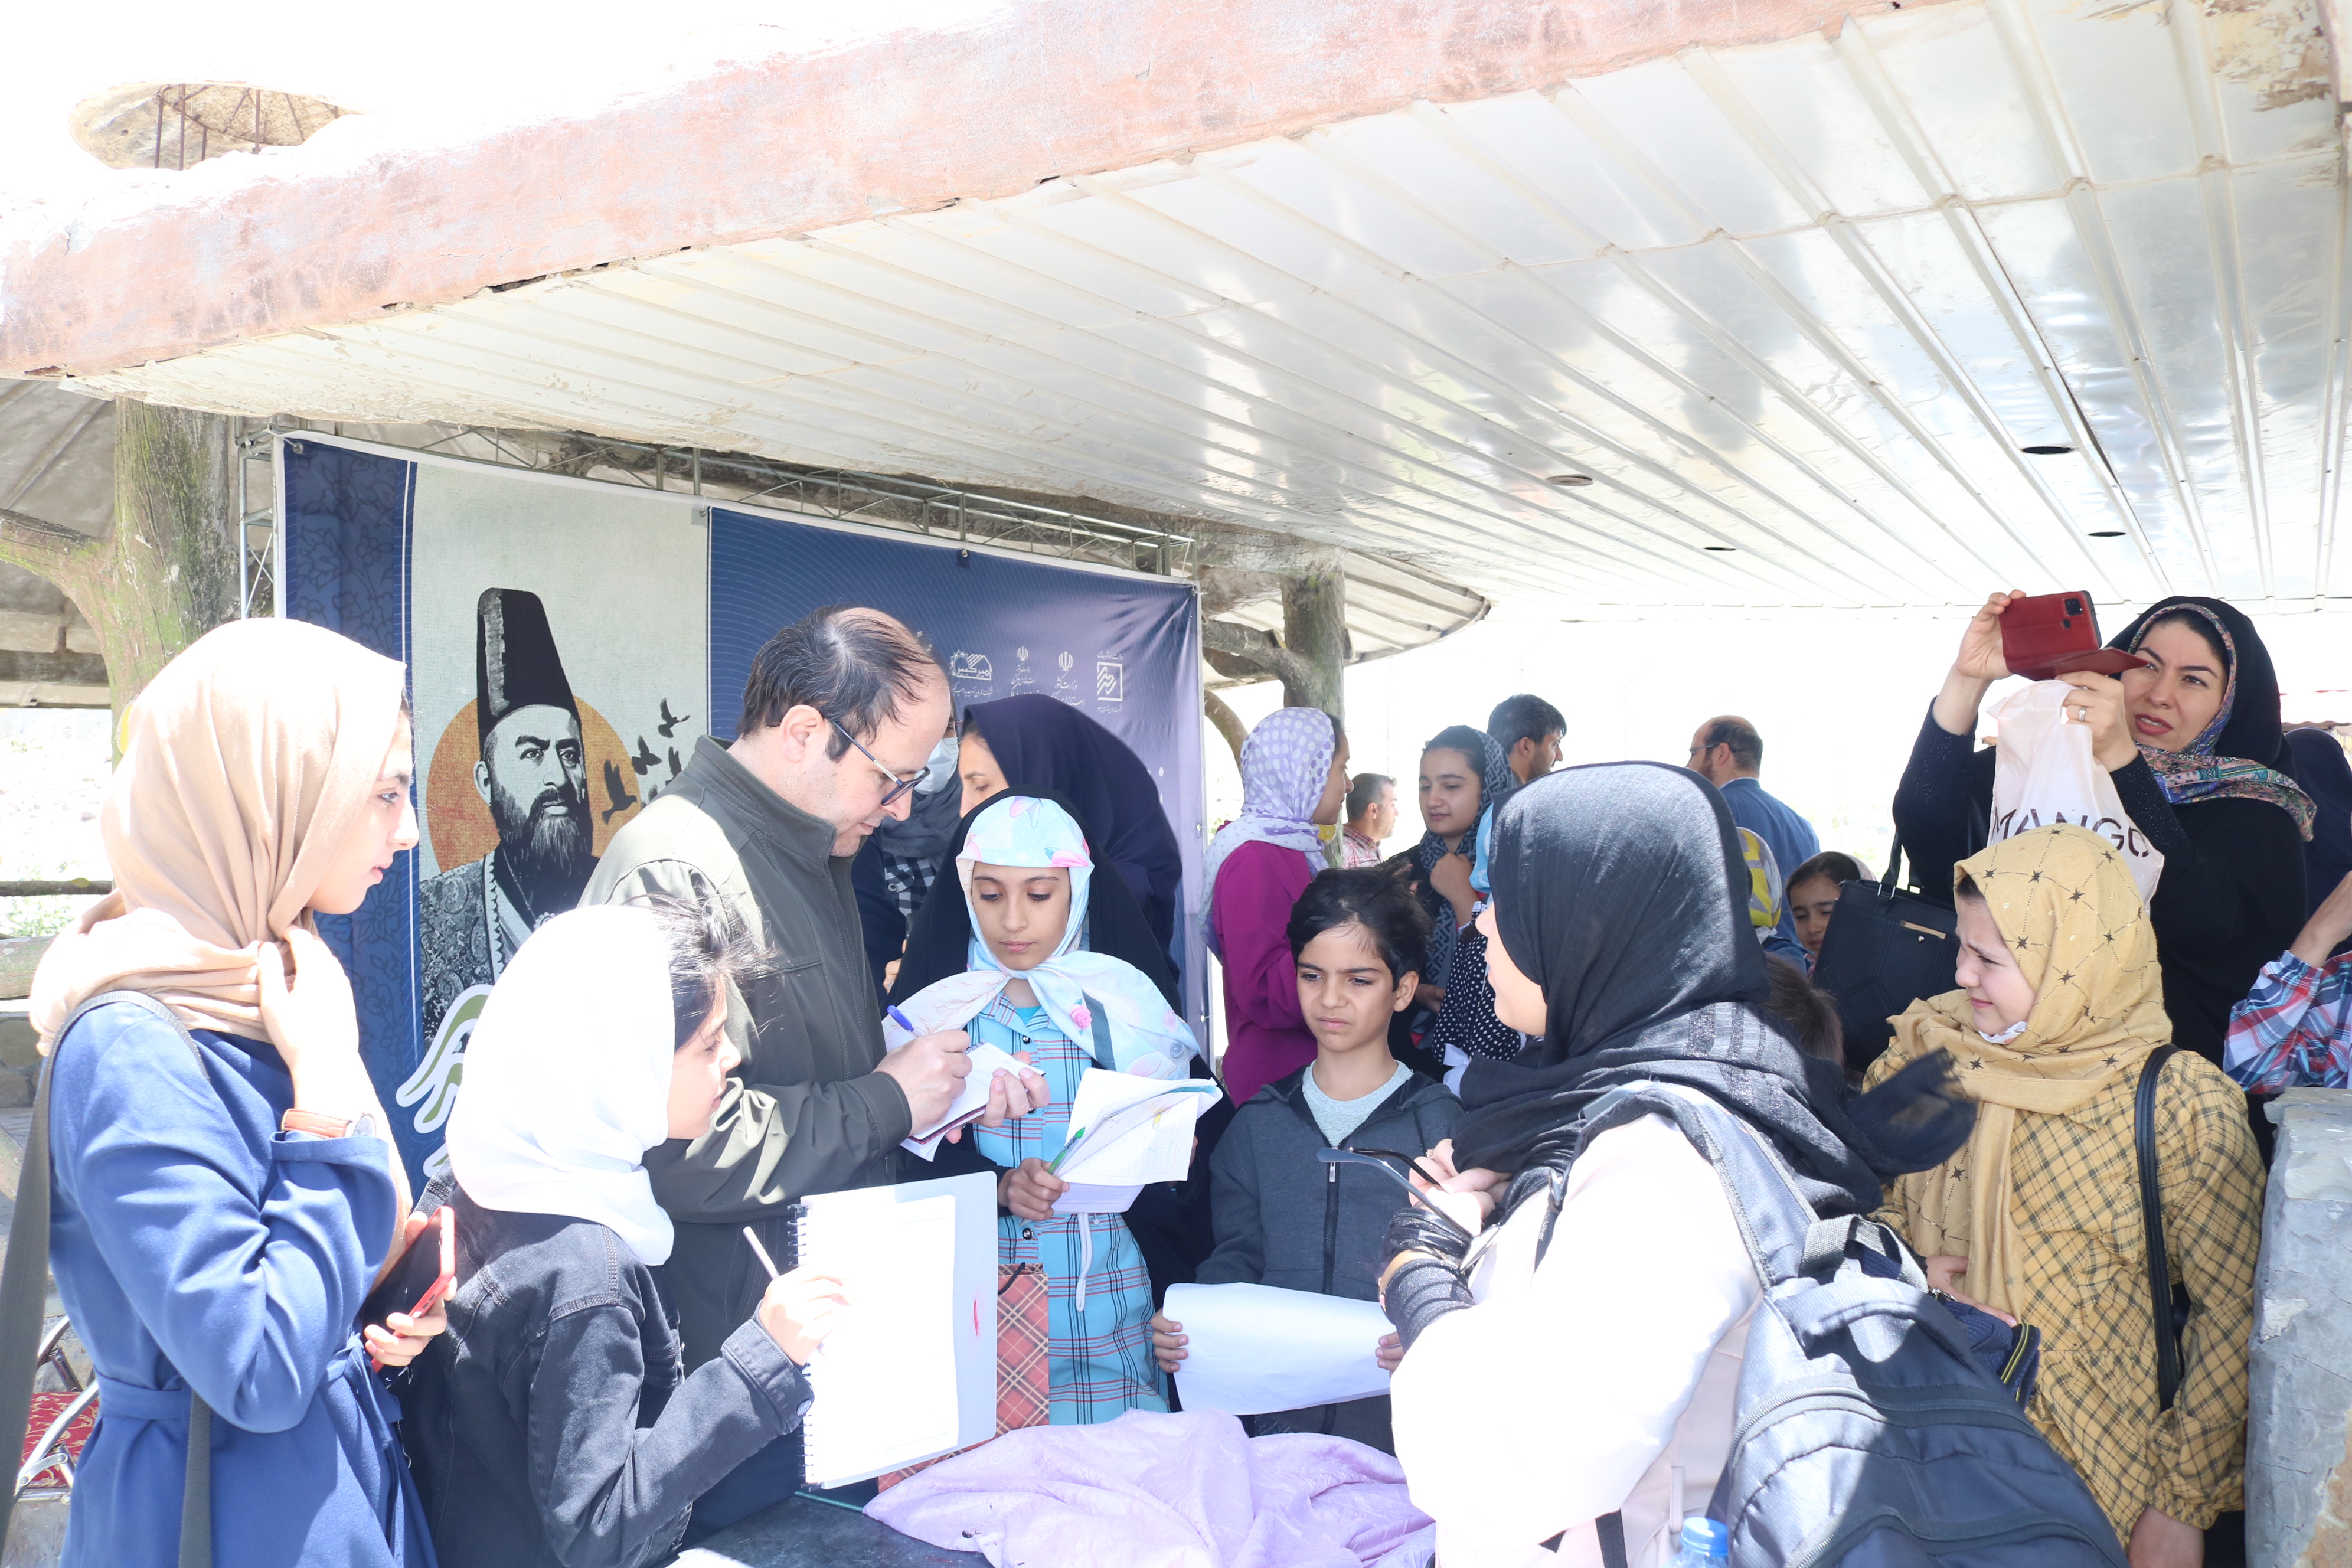 نشست انجمن نویسندگان نوجوان روشنا در کانون استان مرکزی برگزار شد